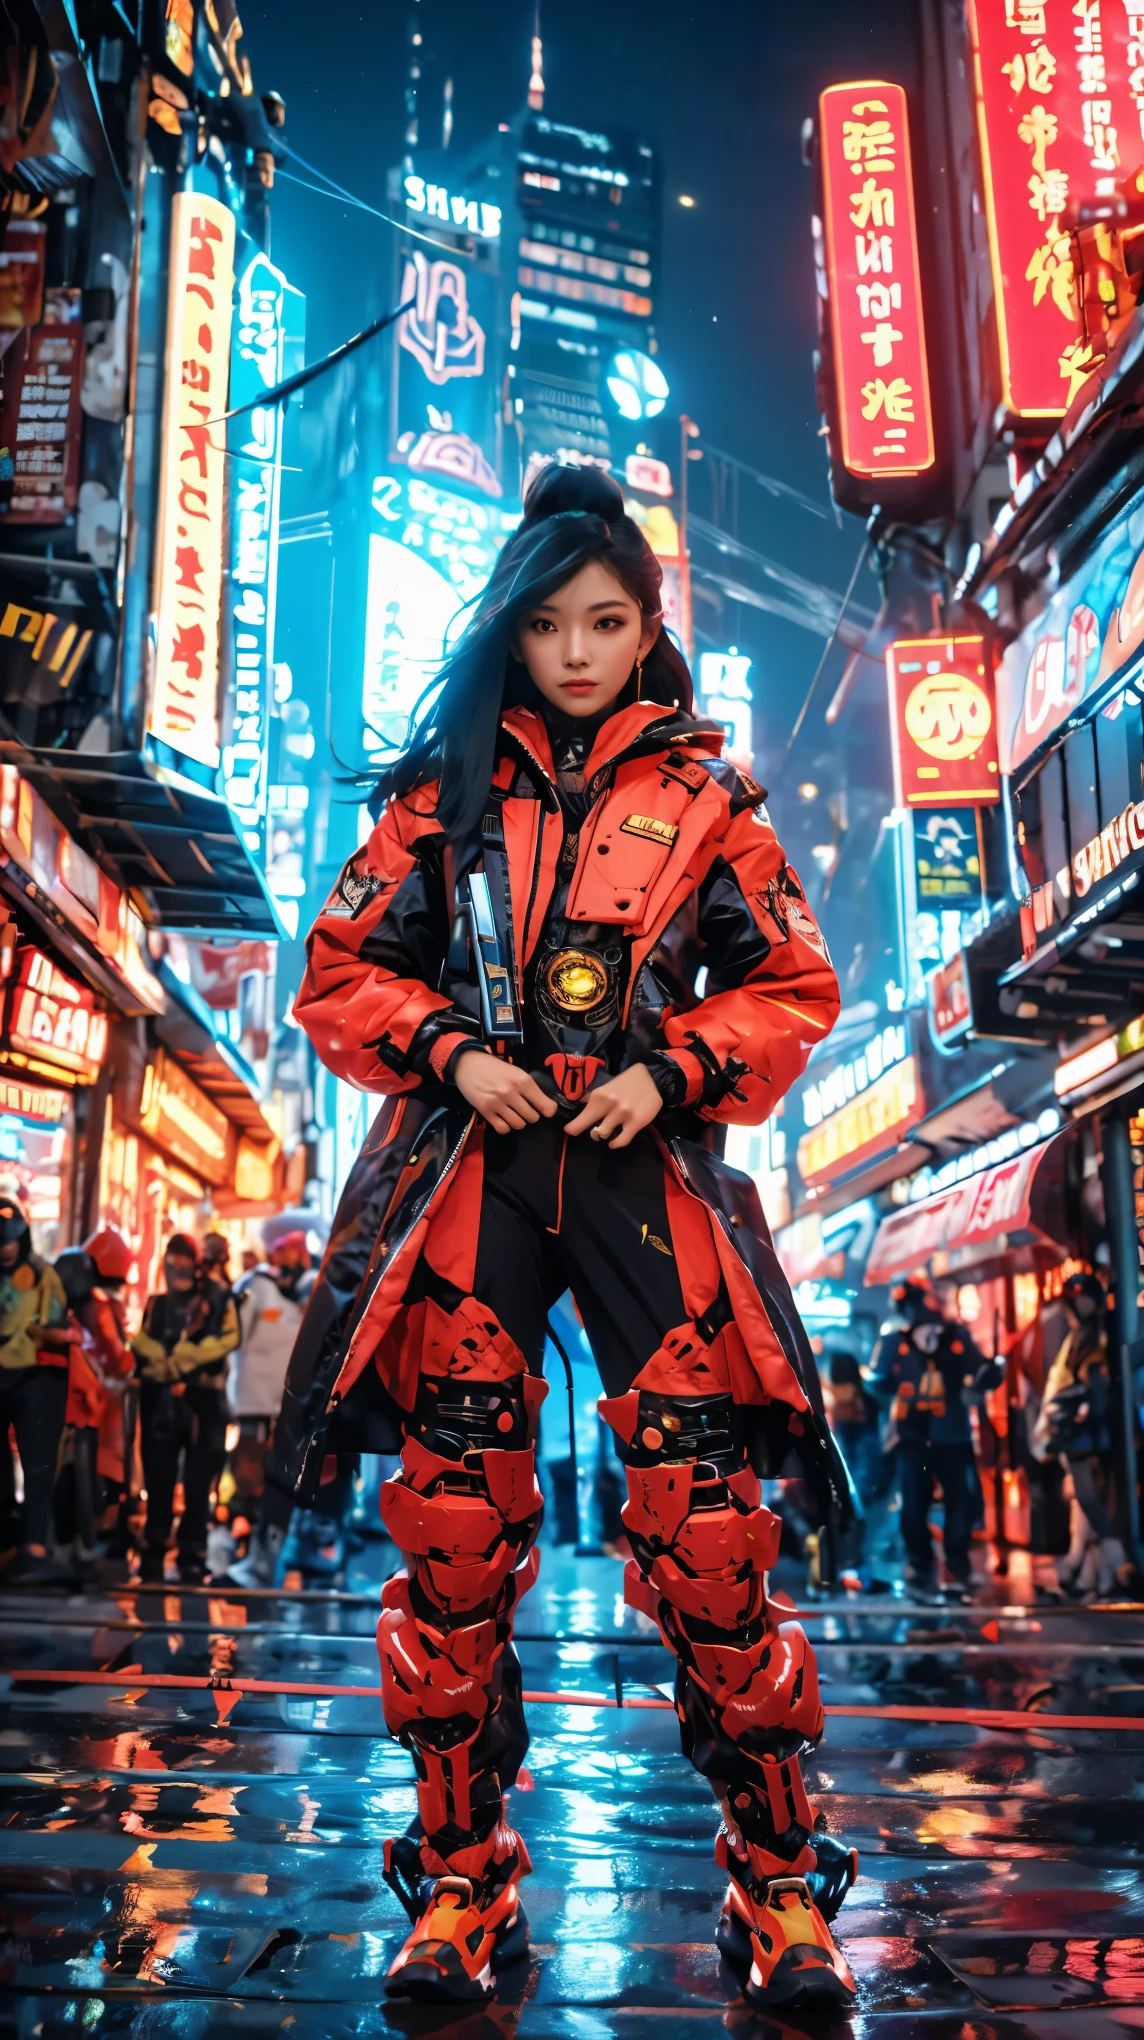 Au cœur de la métropole cyberpunk, Djakarta, une femme asiatique étonnamment éthérée avec une volumineuse cascade de cheveux ébène attire l&#39;attention dans le vibrant, foule éclairée au néon. Vêtu d&#39;un formidable, costume mecha rouge vif, elle dégage de la ténacité et du courage. Les surfaces polies du costume reflètent le paysage urbain en technicolor, améliorant les lumières captivantes et les hologrammes qui sillonnent les airs. Avec son ornement, lame de cérémonie fermement serrée dans la main, this captivating mystery embodies perseverance and optimism amidst Djakarta's riotous, fut